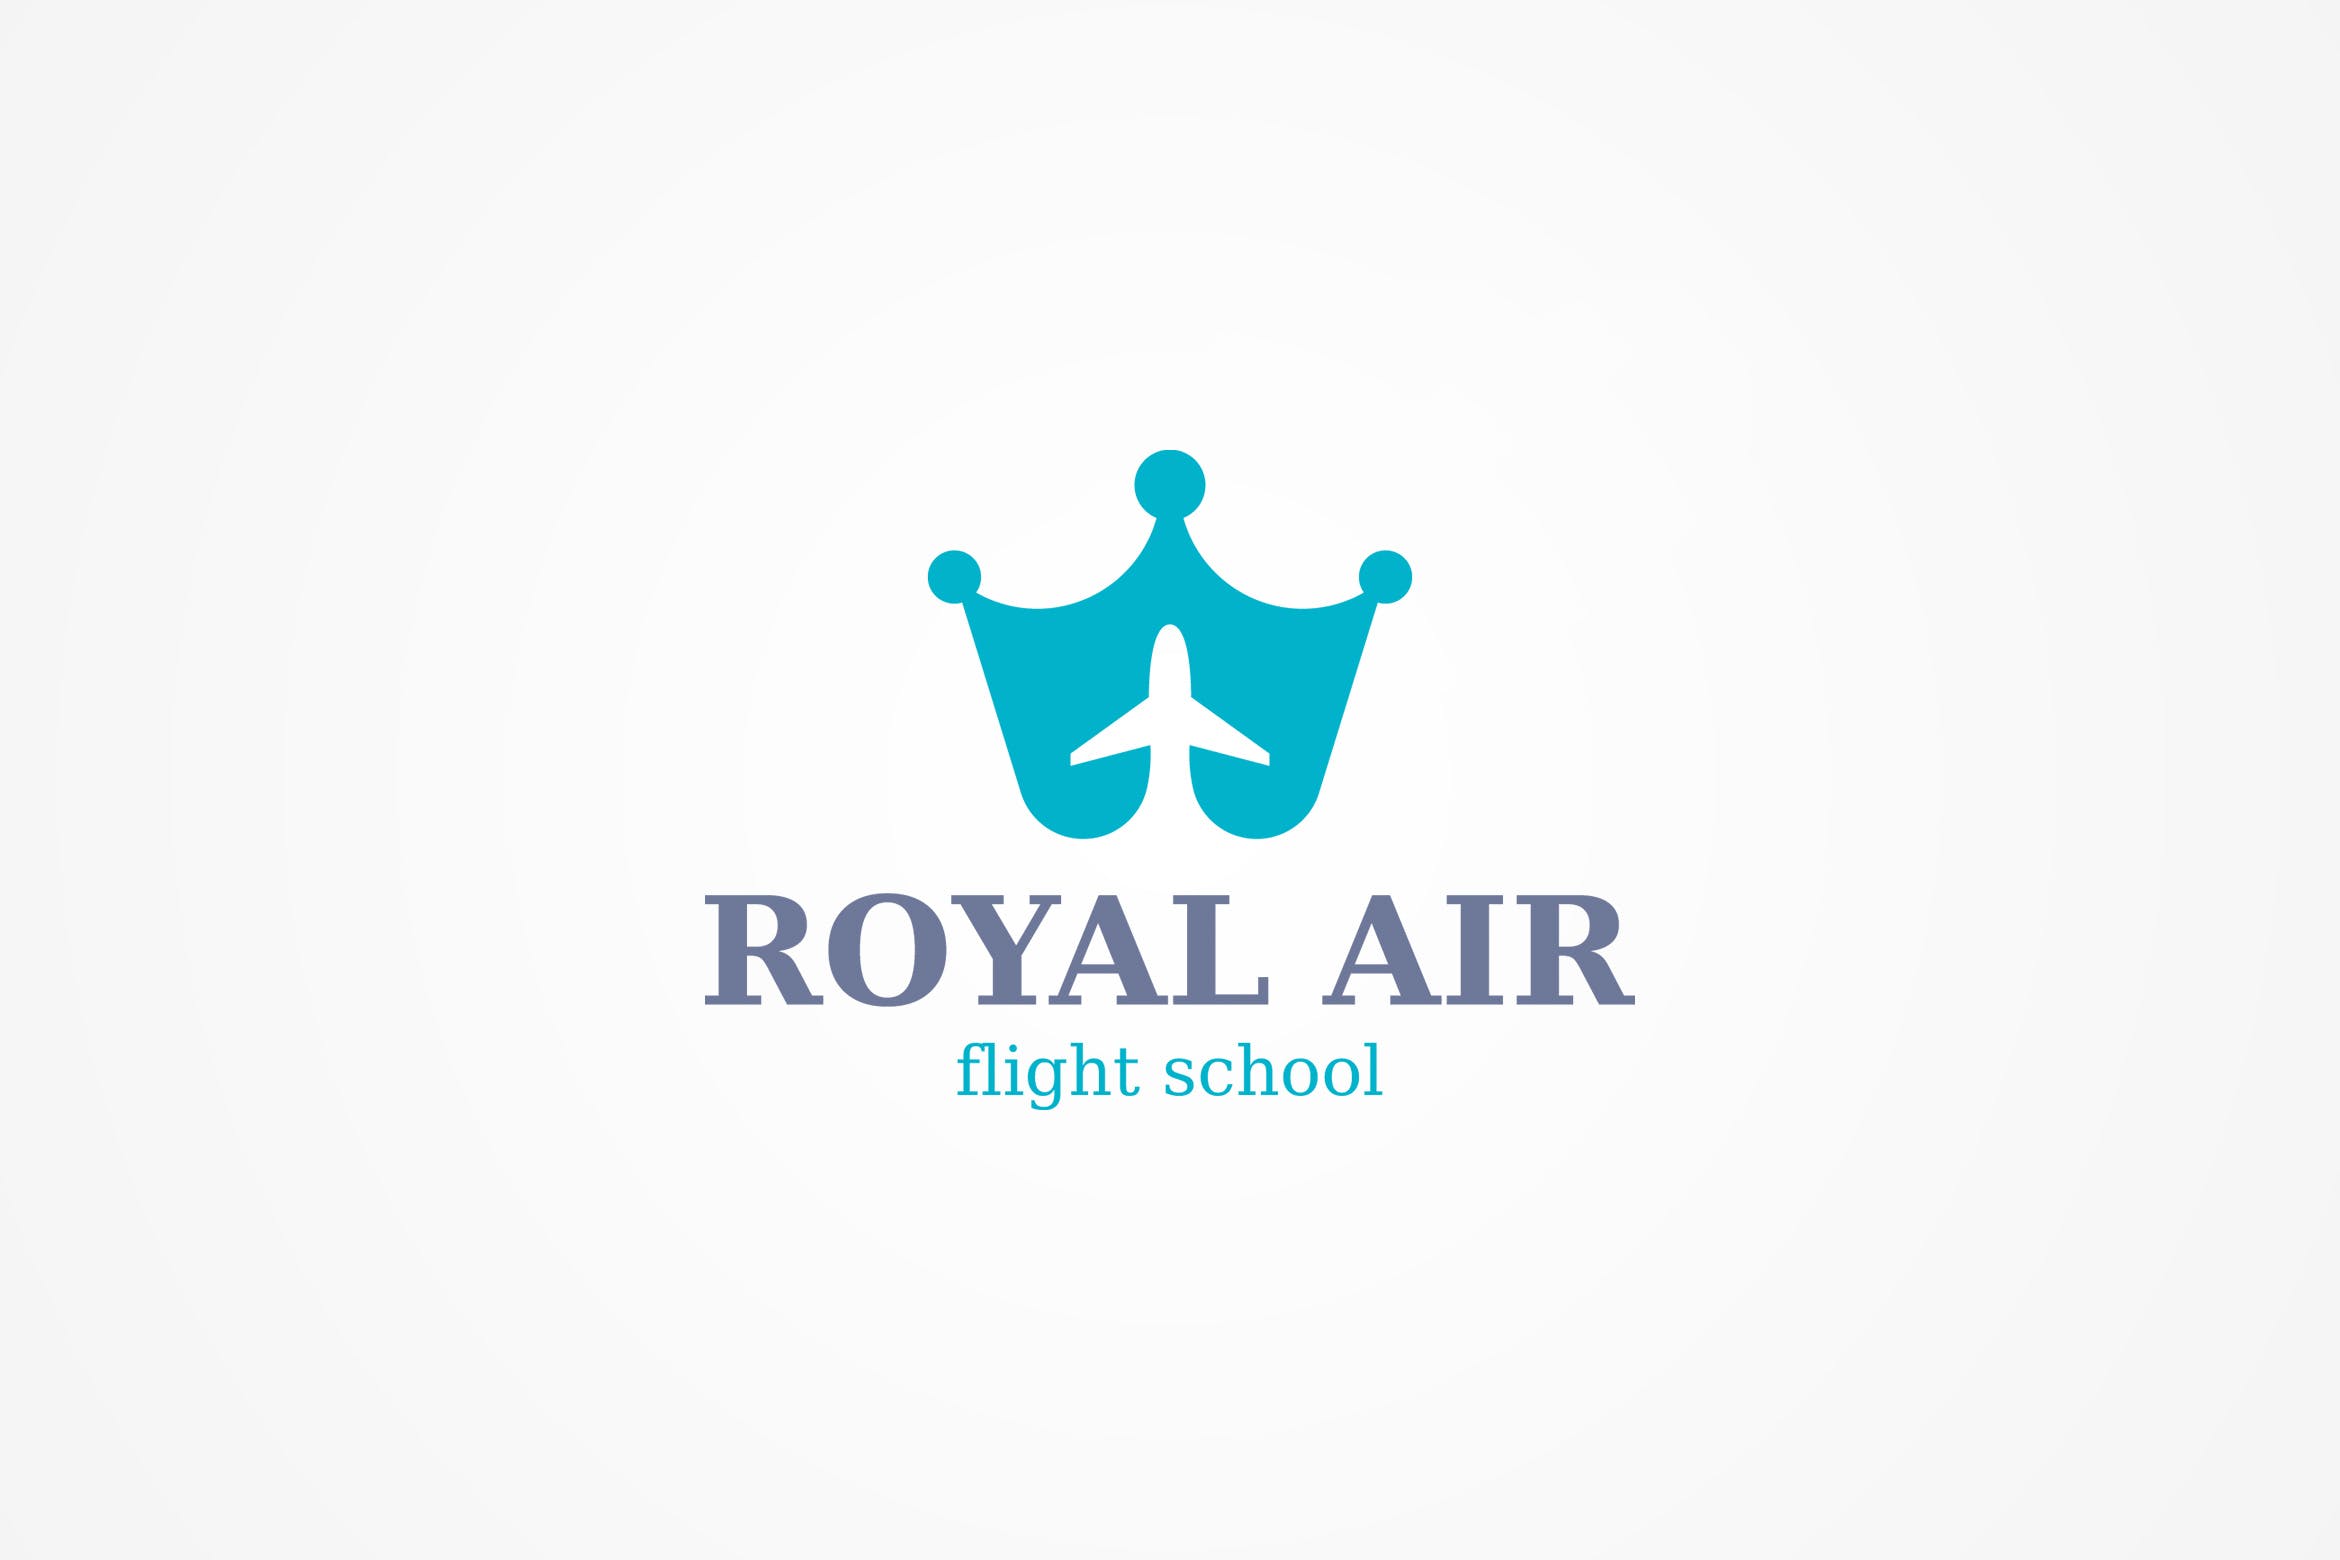 航空飞行学院校徽标志设计模板 Plane Logo Template插图